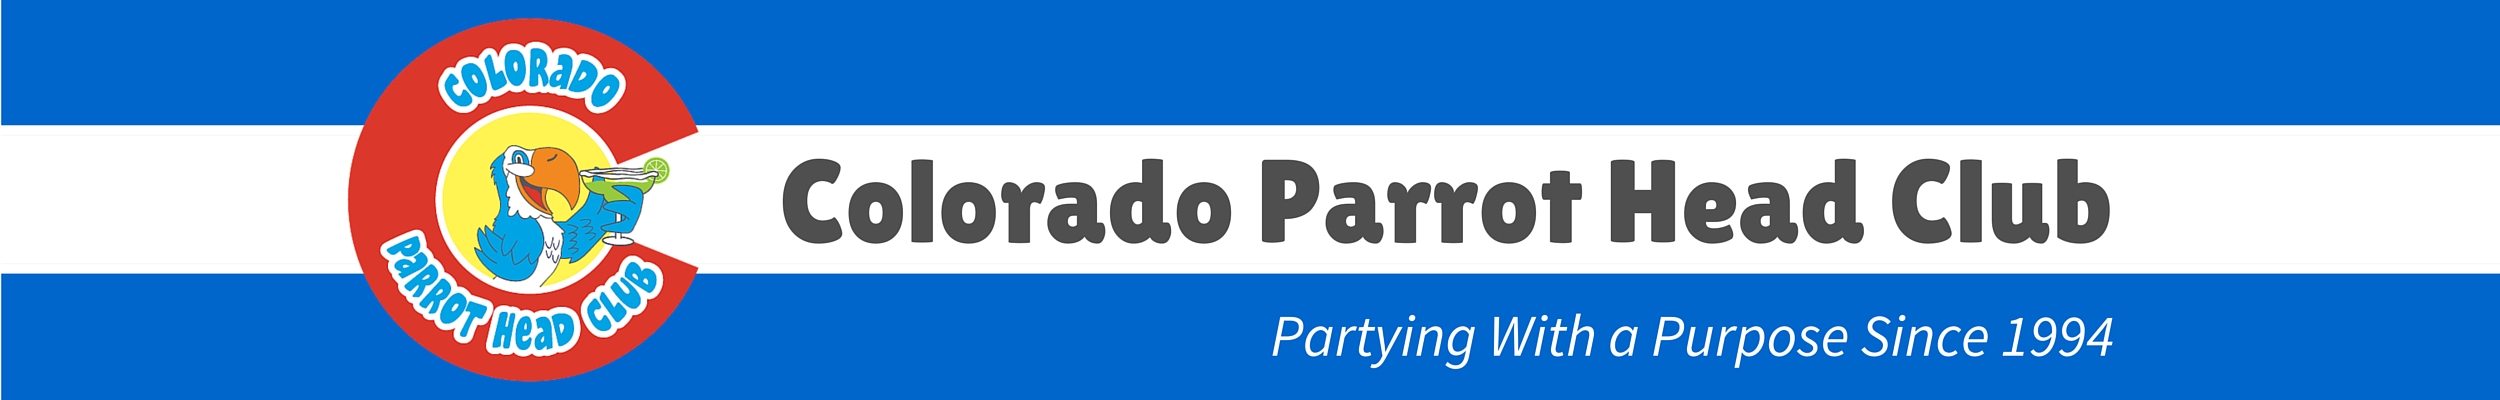 Colorado Parrot Head Club